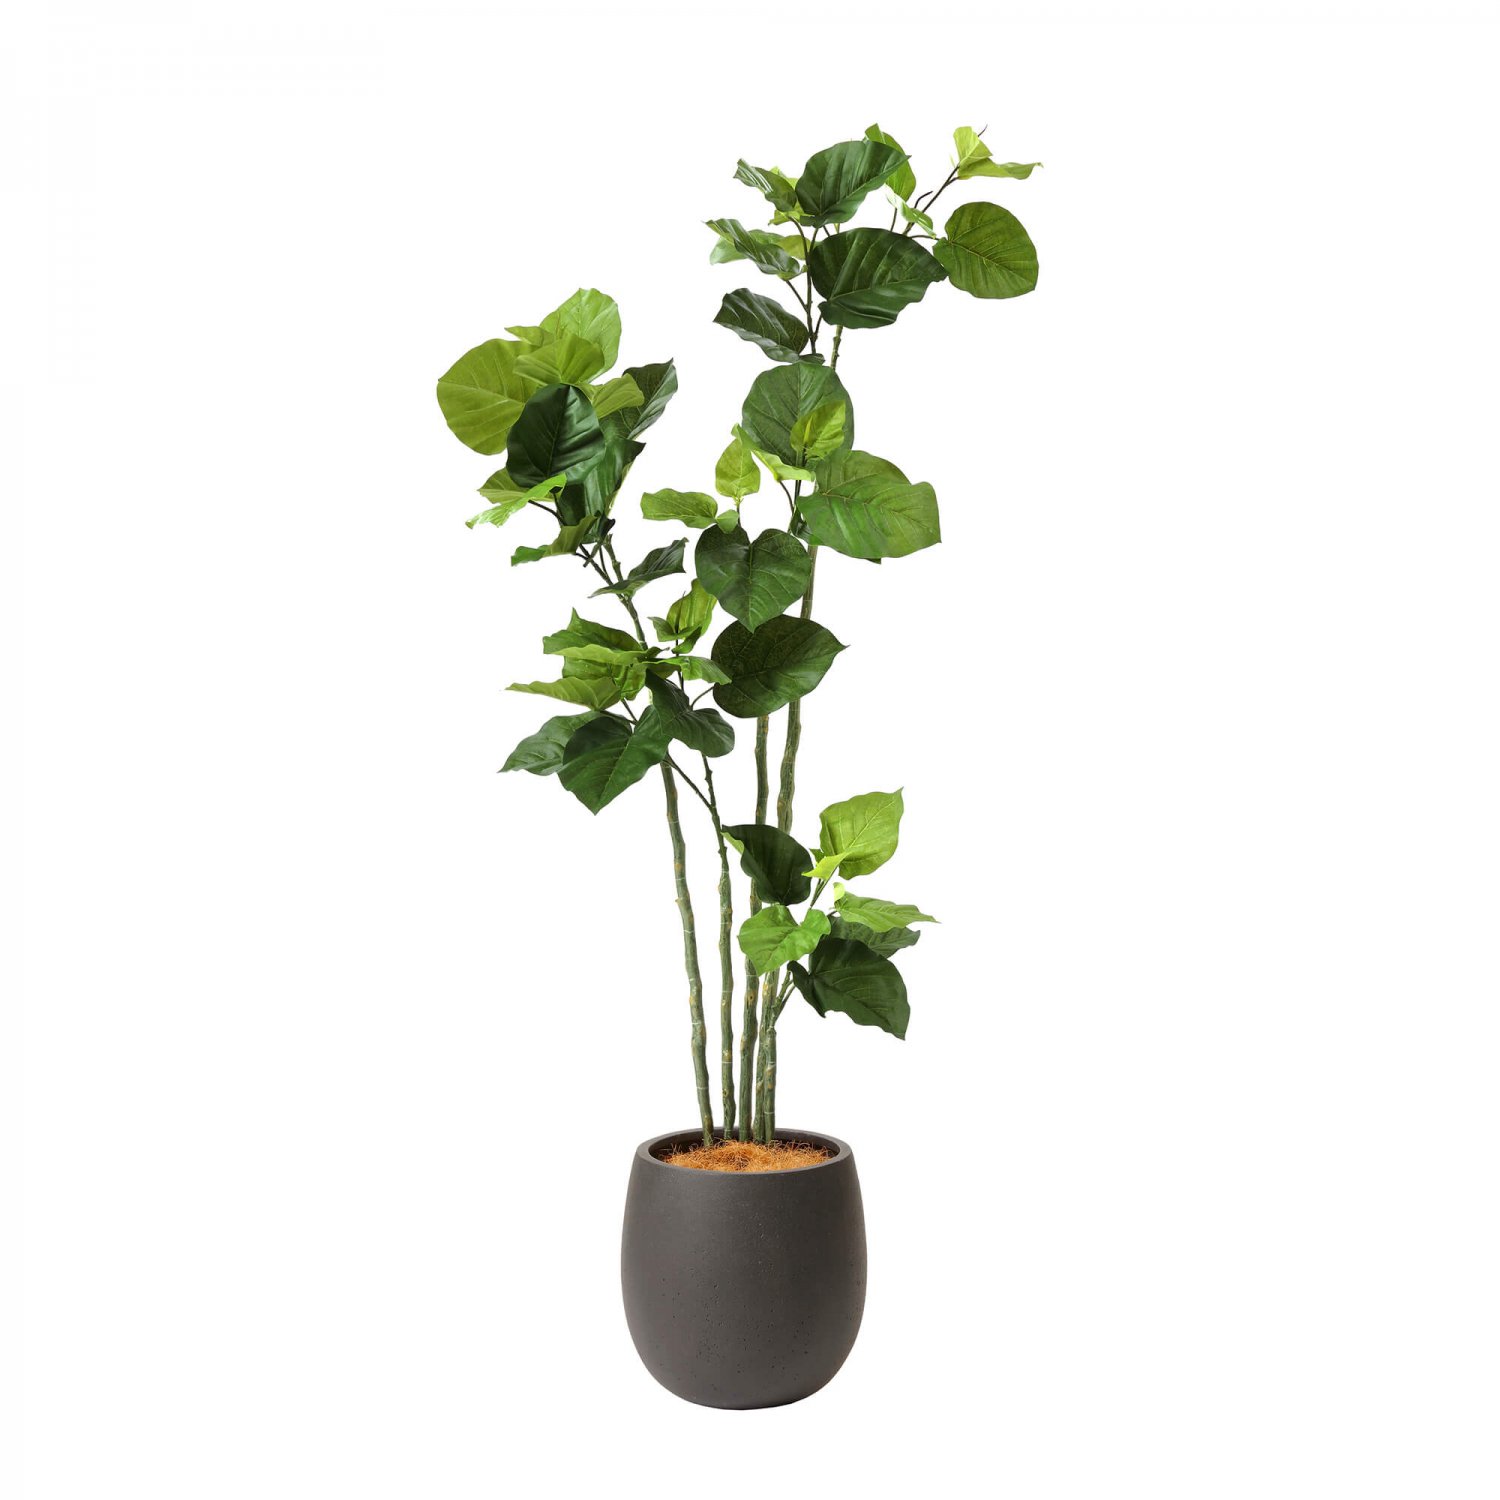 ウンベラータ エッグポット H155cm ブラック 観葉植物 フェイクグリーン eco 【別倉庫直送品】 